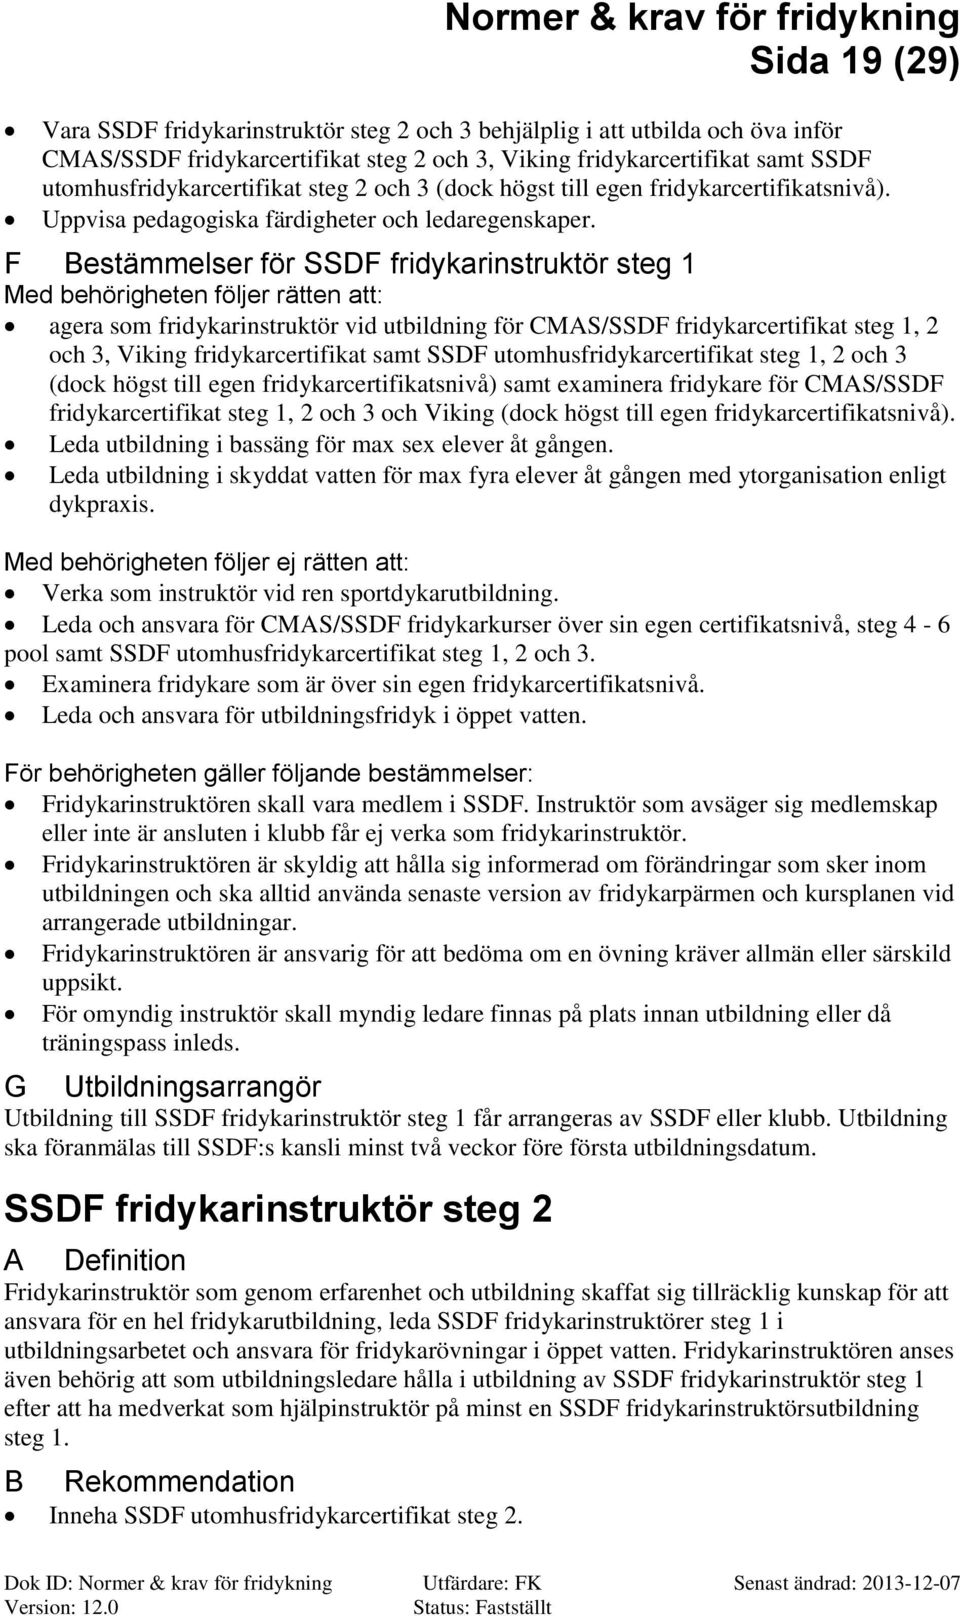 F estämmelser för SSDF fridykarinstruktör steg 1 Med behörigheten följer rätten att: agera som fridykarinstruktör vid utbildning för MS/SSDF fridykarcertifikat steg 1, 2 och 3, Viking